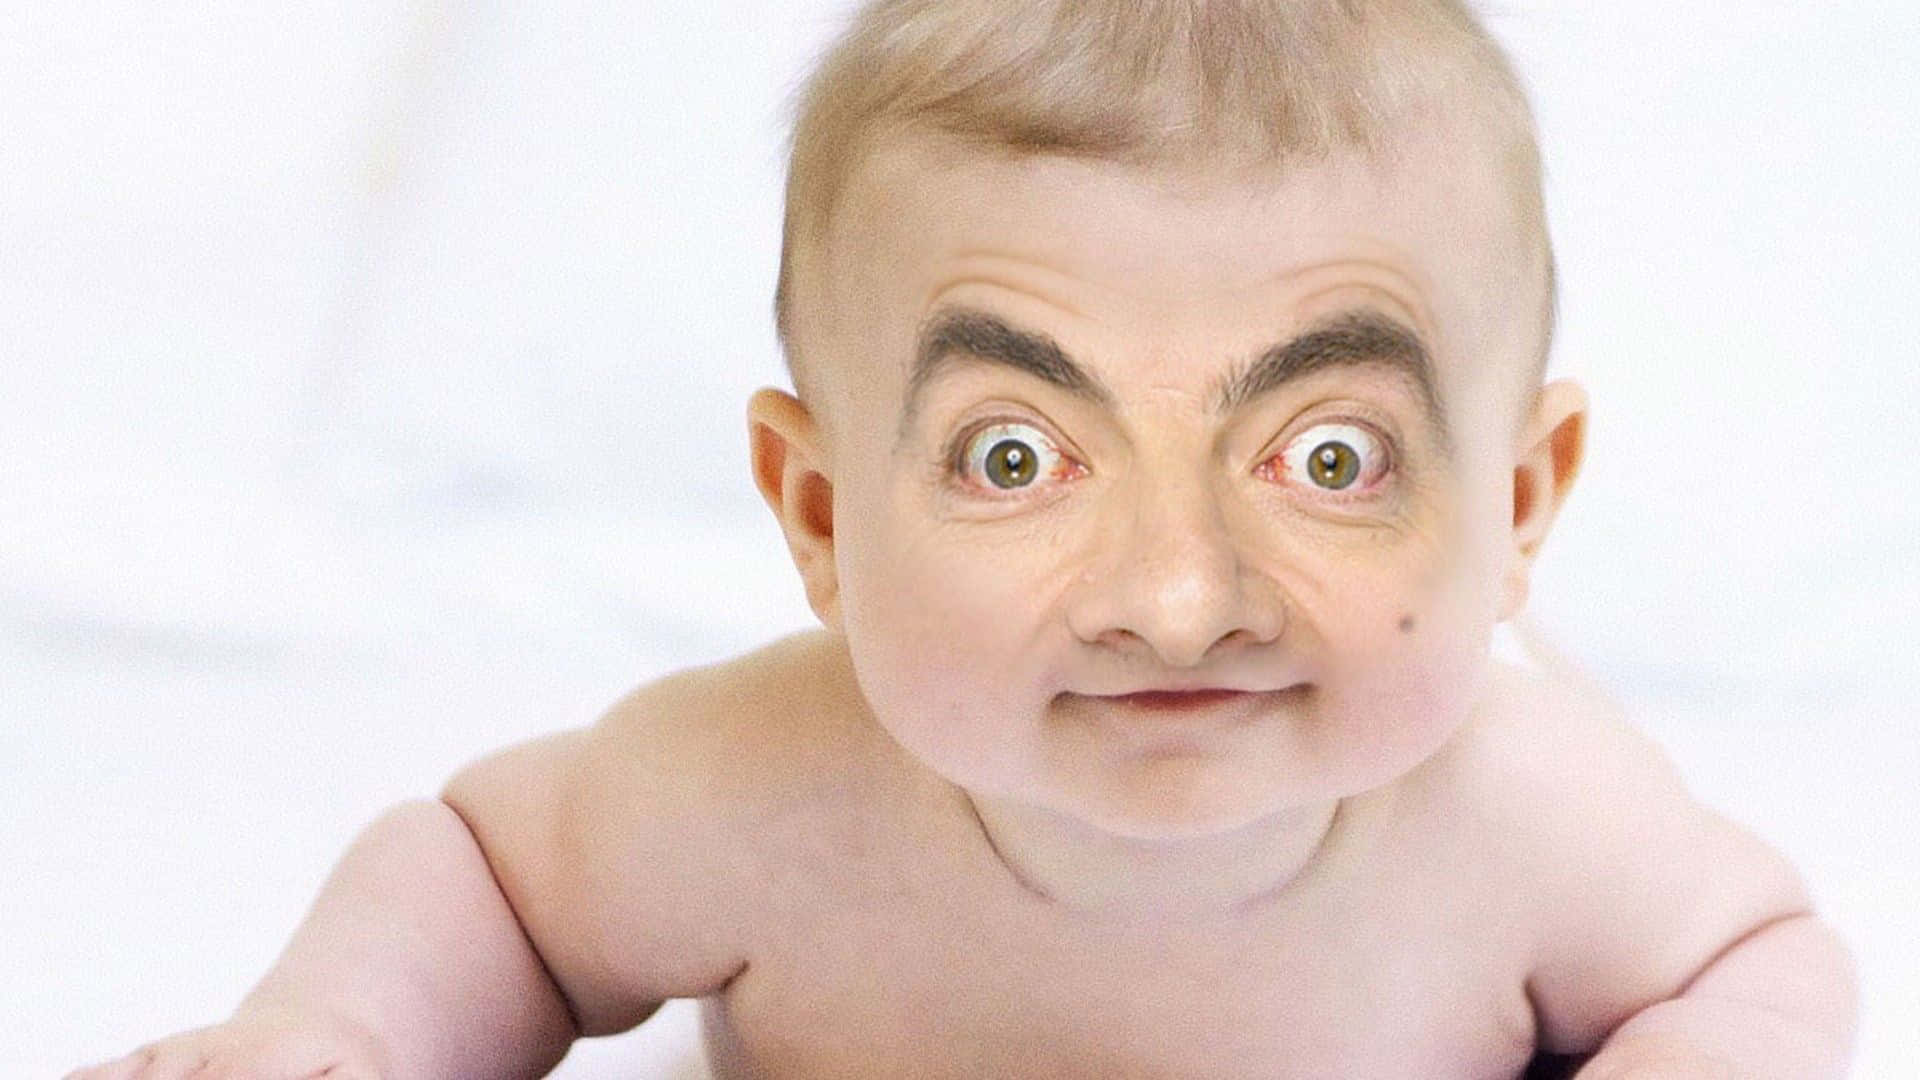 Mærkeligredigering Af Mr. Bean På Babyens Ansigtsbillede.